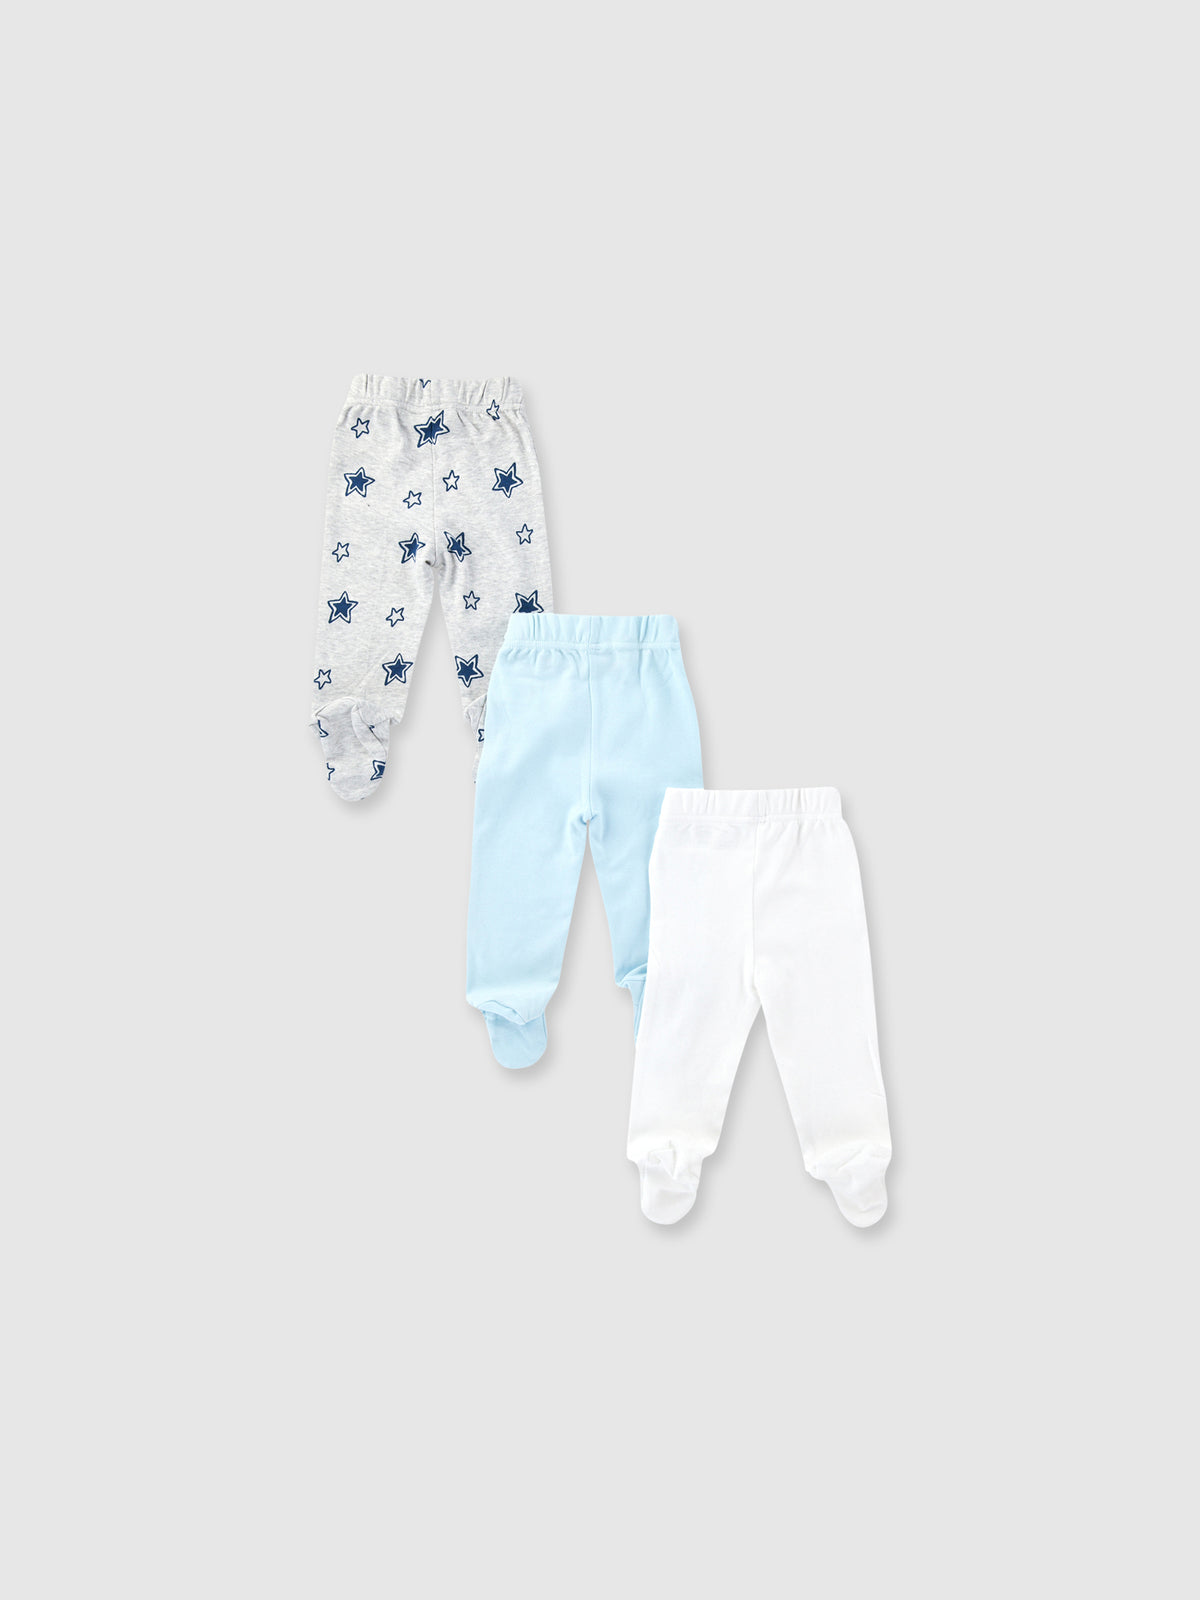 מארז 3 מכנסיים עם רגליות STAR BABY / תינוקות- Delta|דלתא